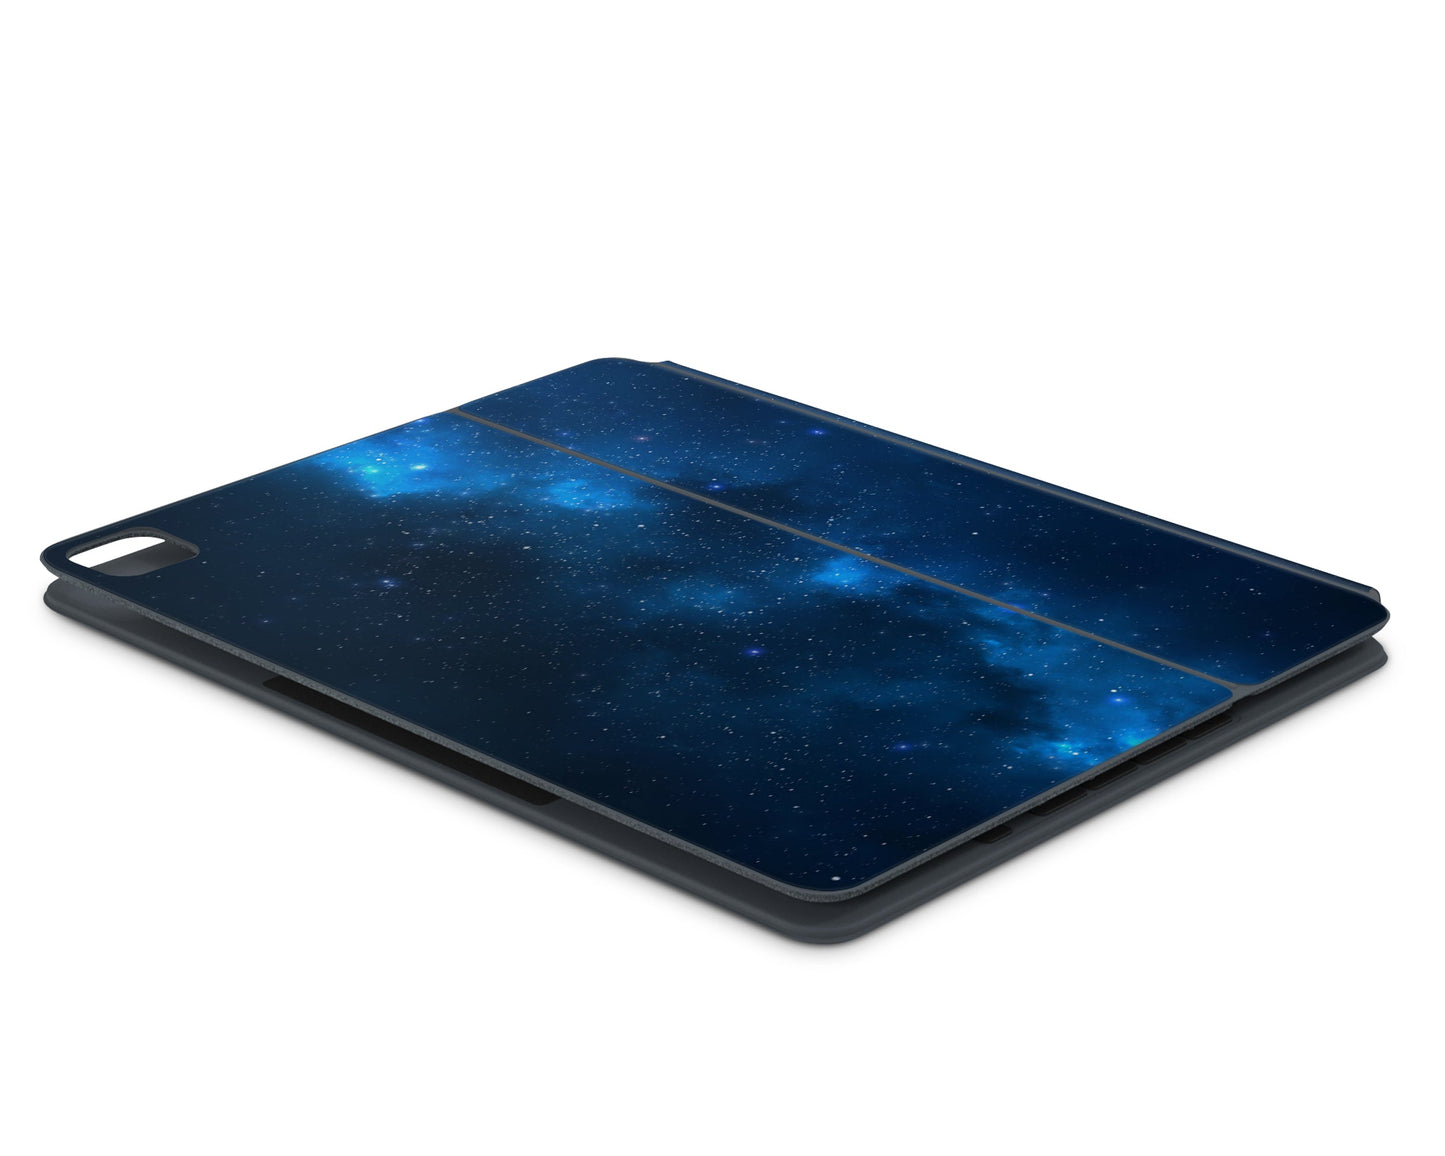 Lux Skins Magic Keyboard Blue Stardust Galaxy iPad Pro 12.9" Skins - Galaxy Artwork Skin